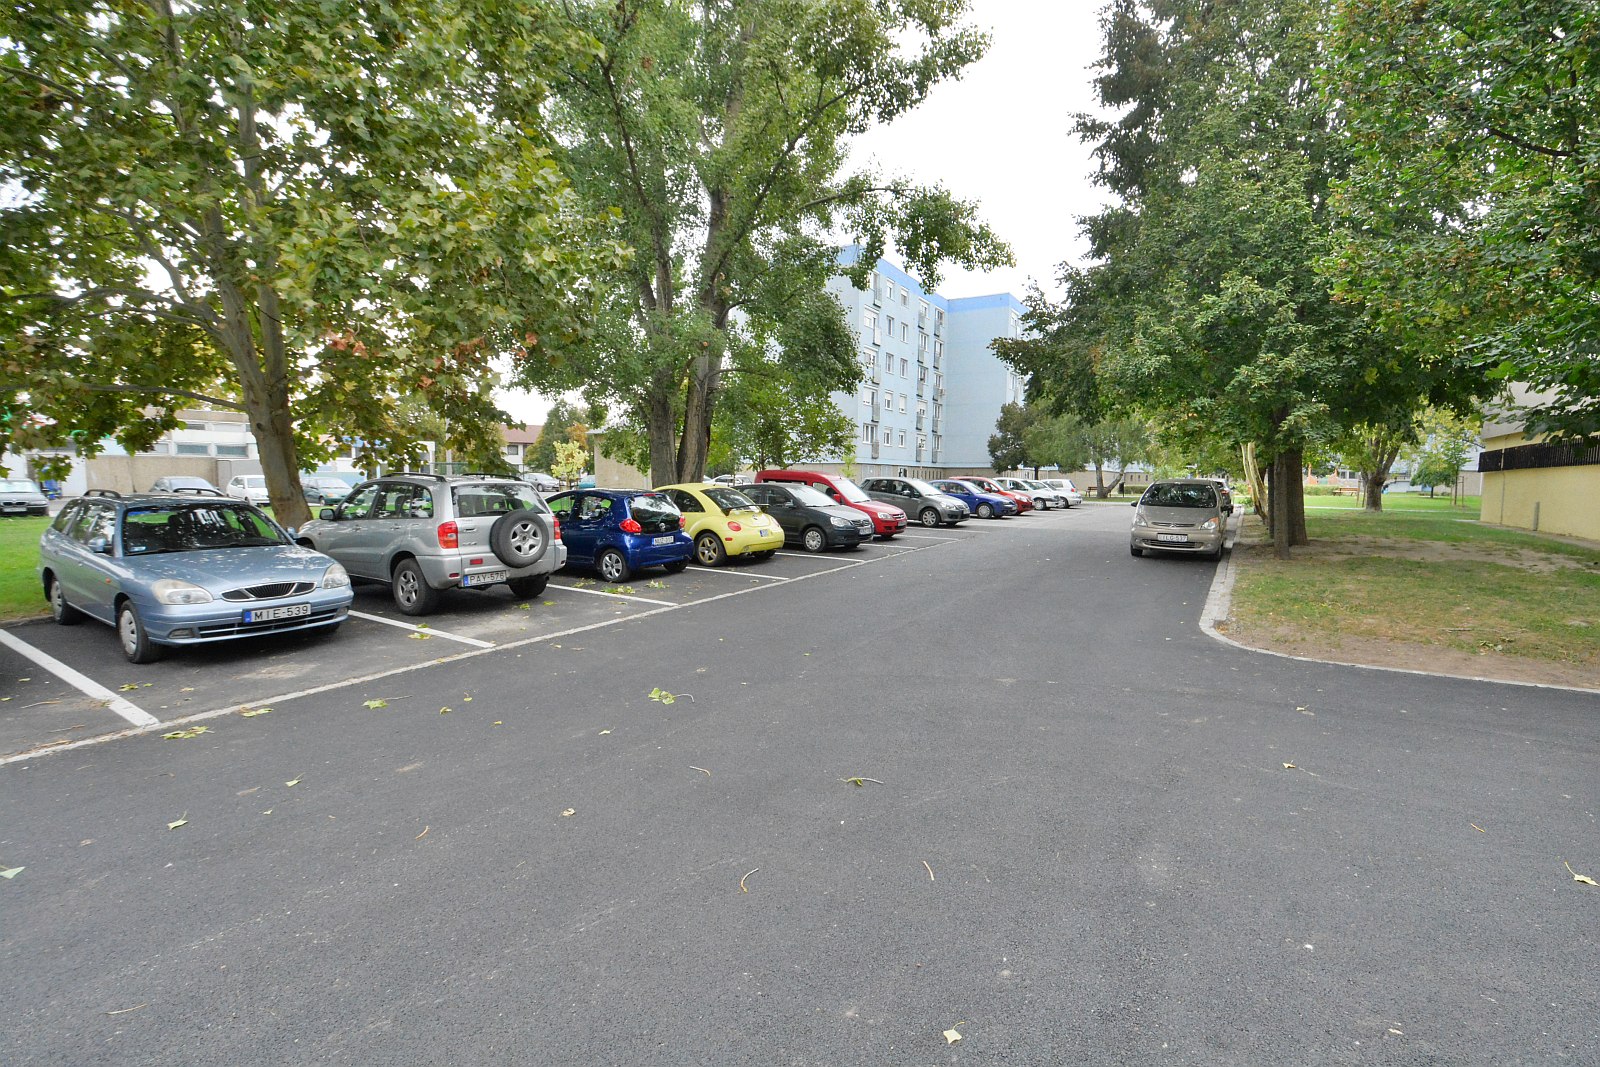 Újabb út- és parkolófelújítás készült el a Vízivárosban